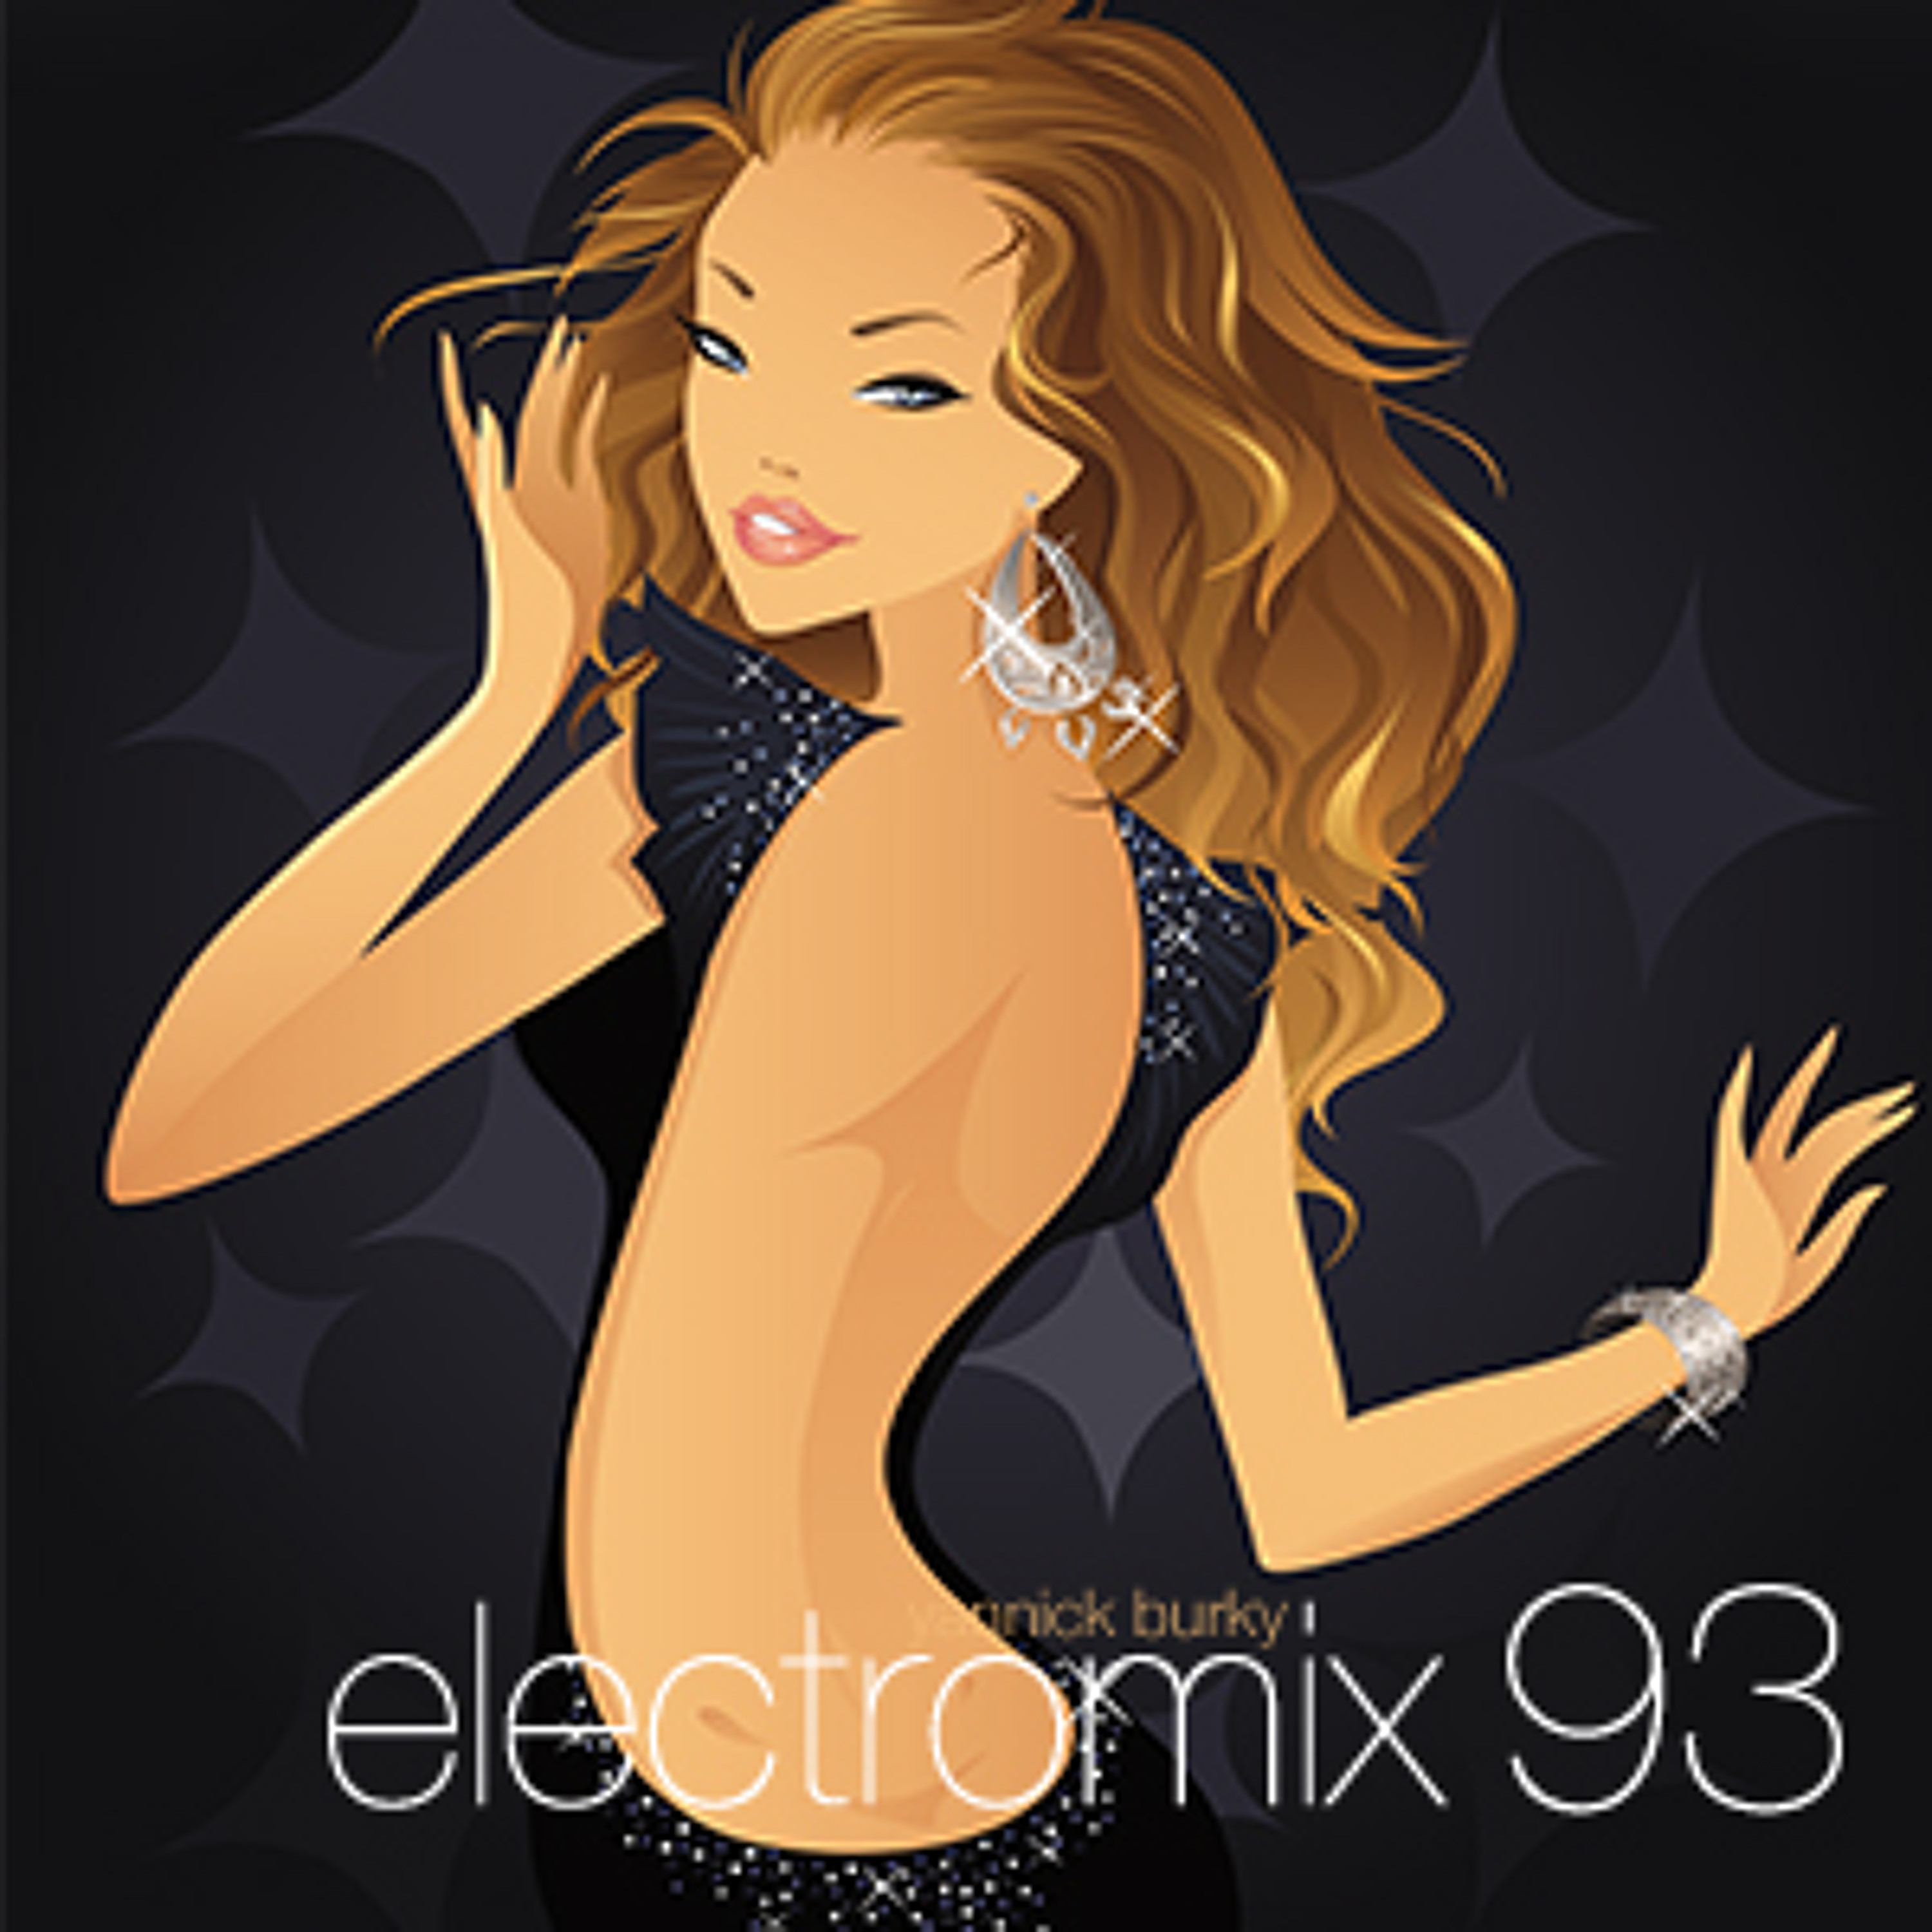 electromix 93 • EDM